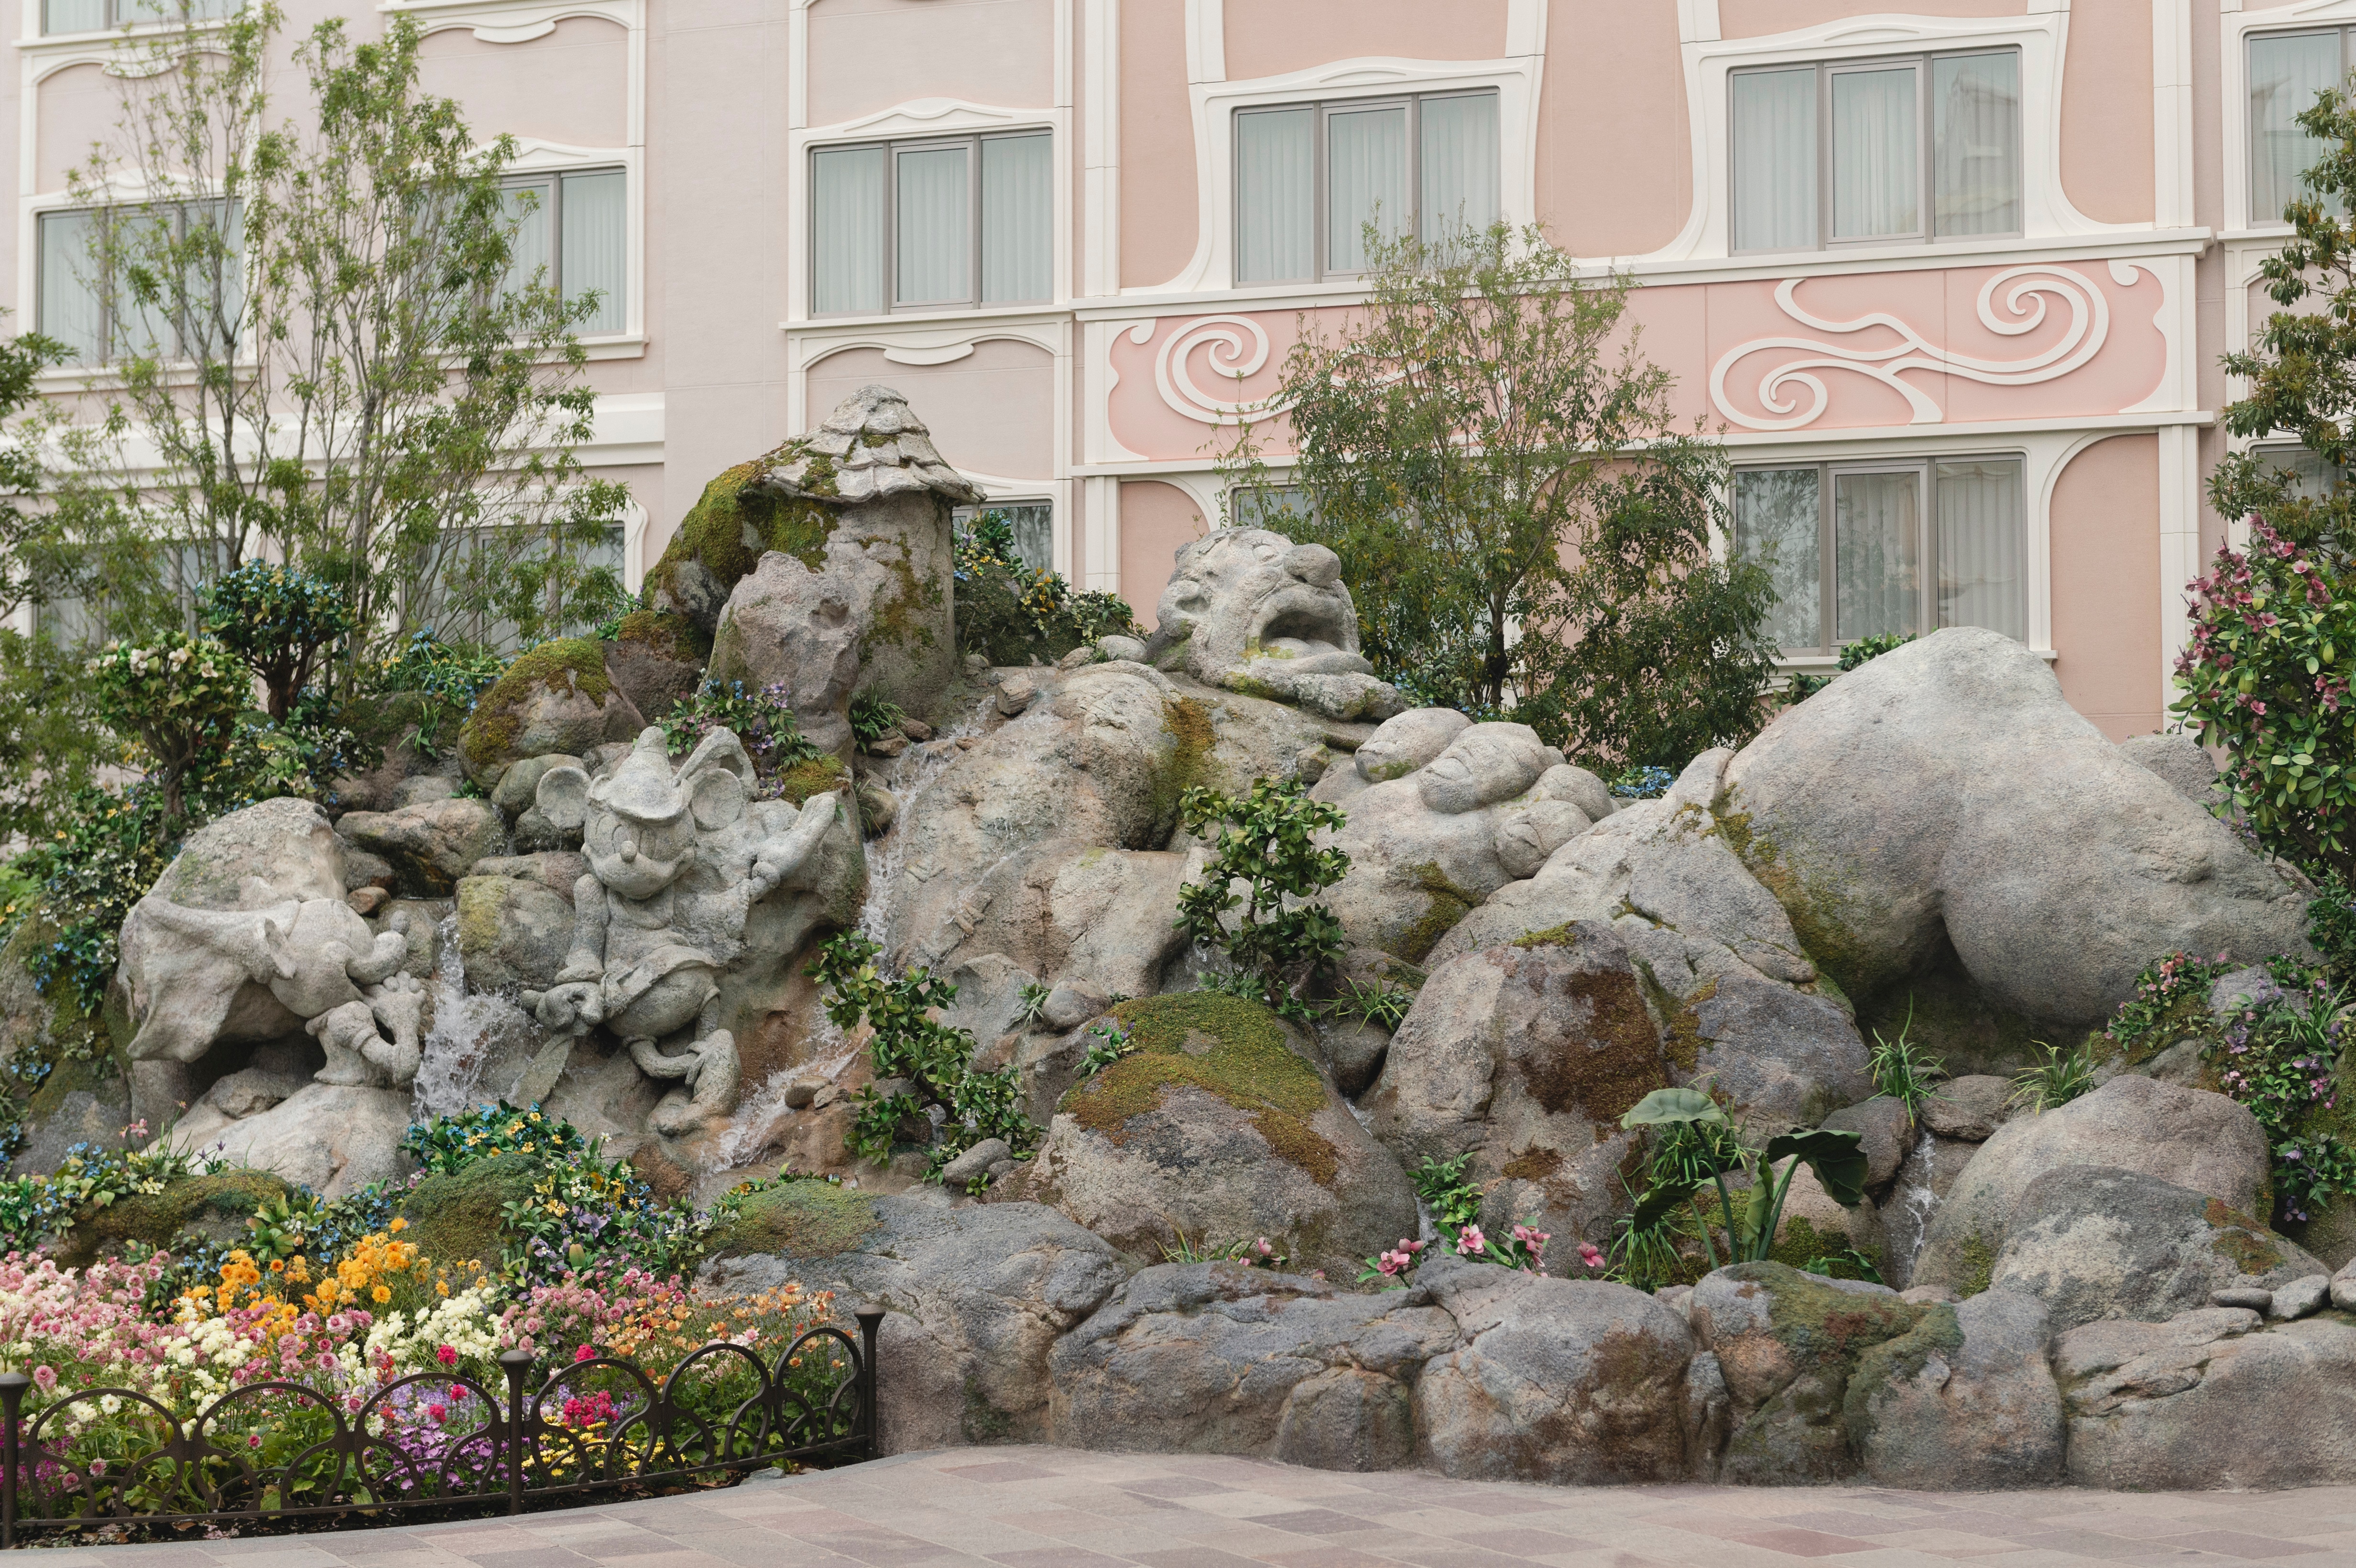 映画「ミッキーの巨人退治」のキャラクターが岩で表現された魔法の泉(ロックワーク)がゲストをお迎え！